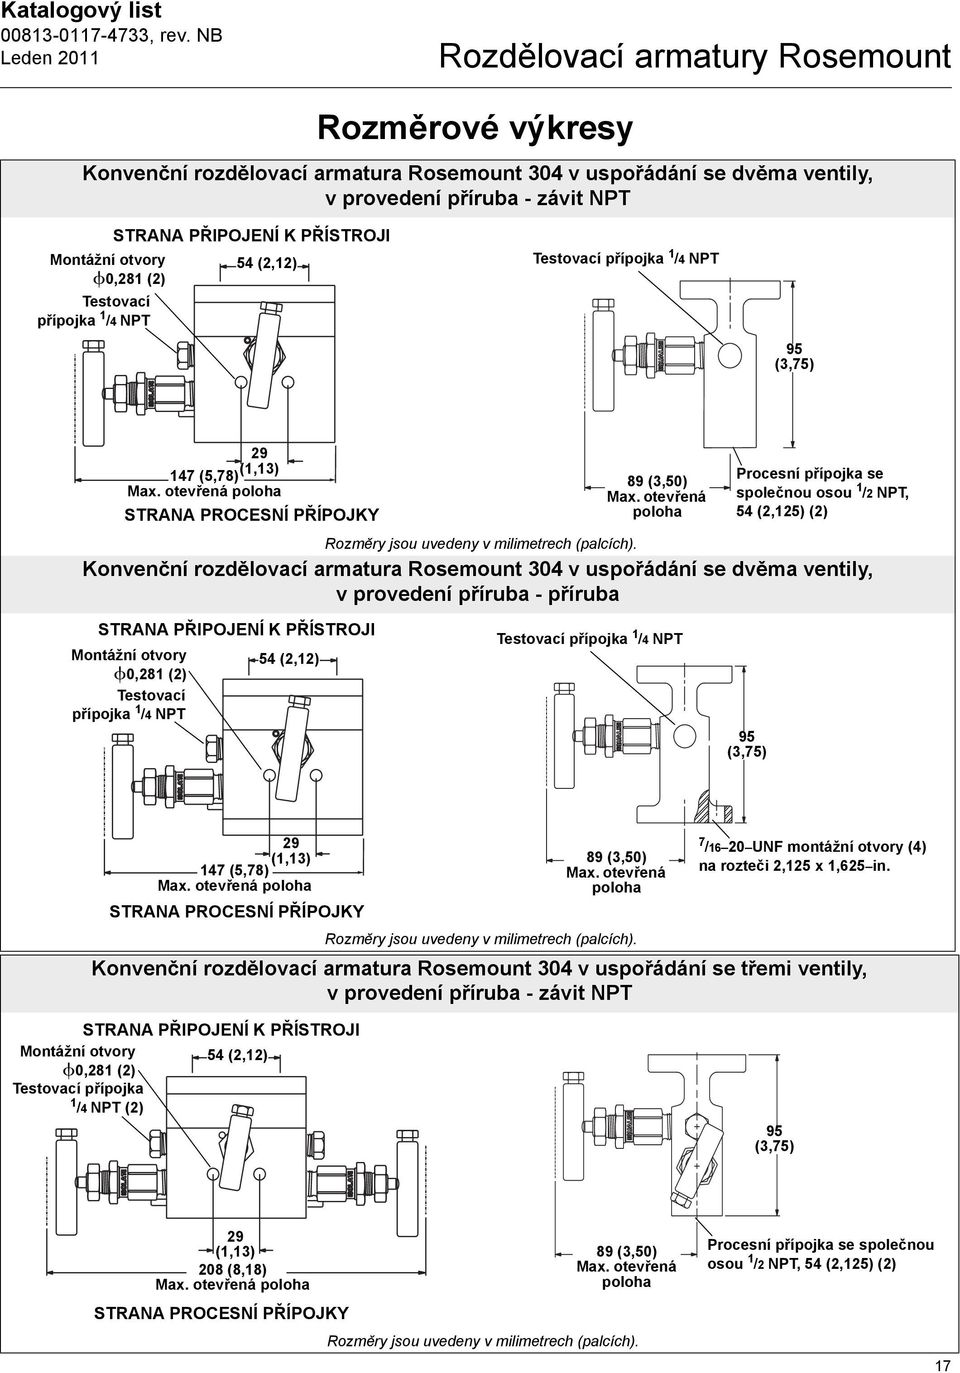 otevřená Procesní přípojka se společnou osou 1 /2 NPT, 54 (2,125) (2) Konvenční rozdělovací armatura Rosemount 304 v uspořádání se dvěma ventily, v provedení příruba - příruba STRANA PŘIPOJENÍ K